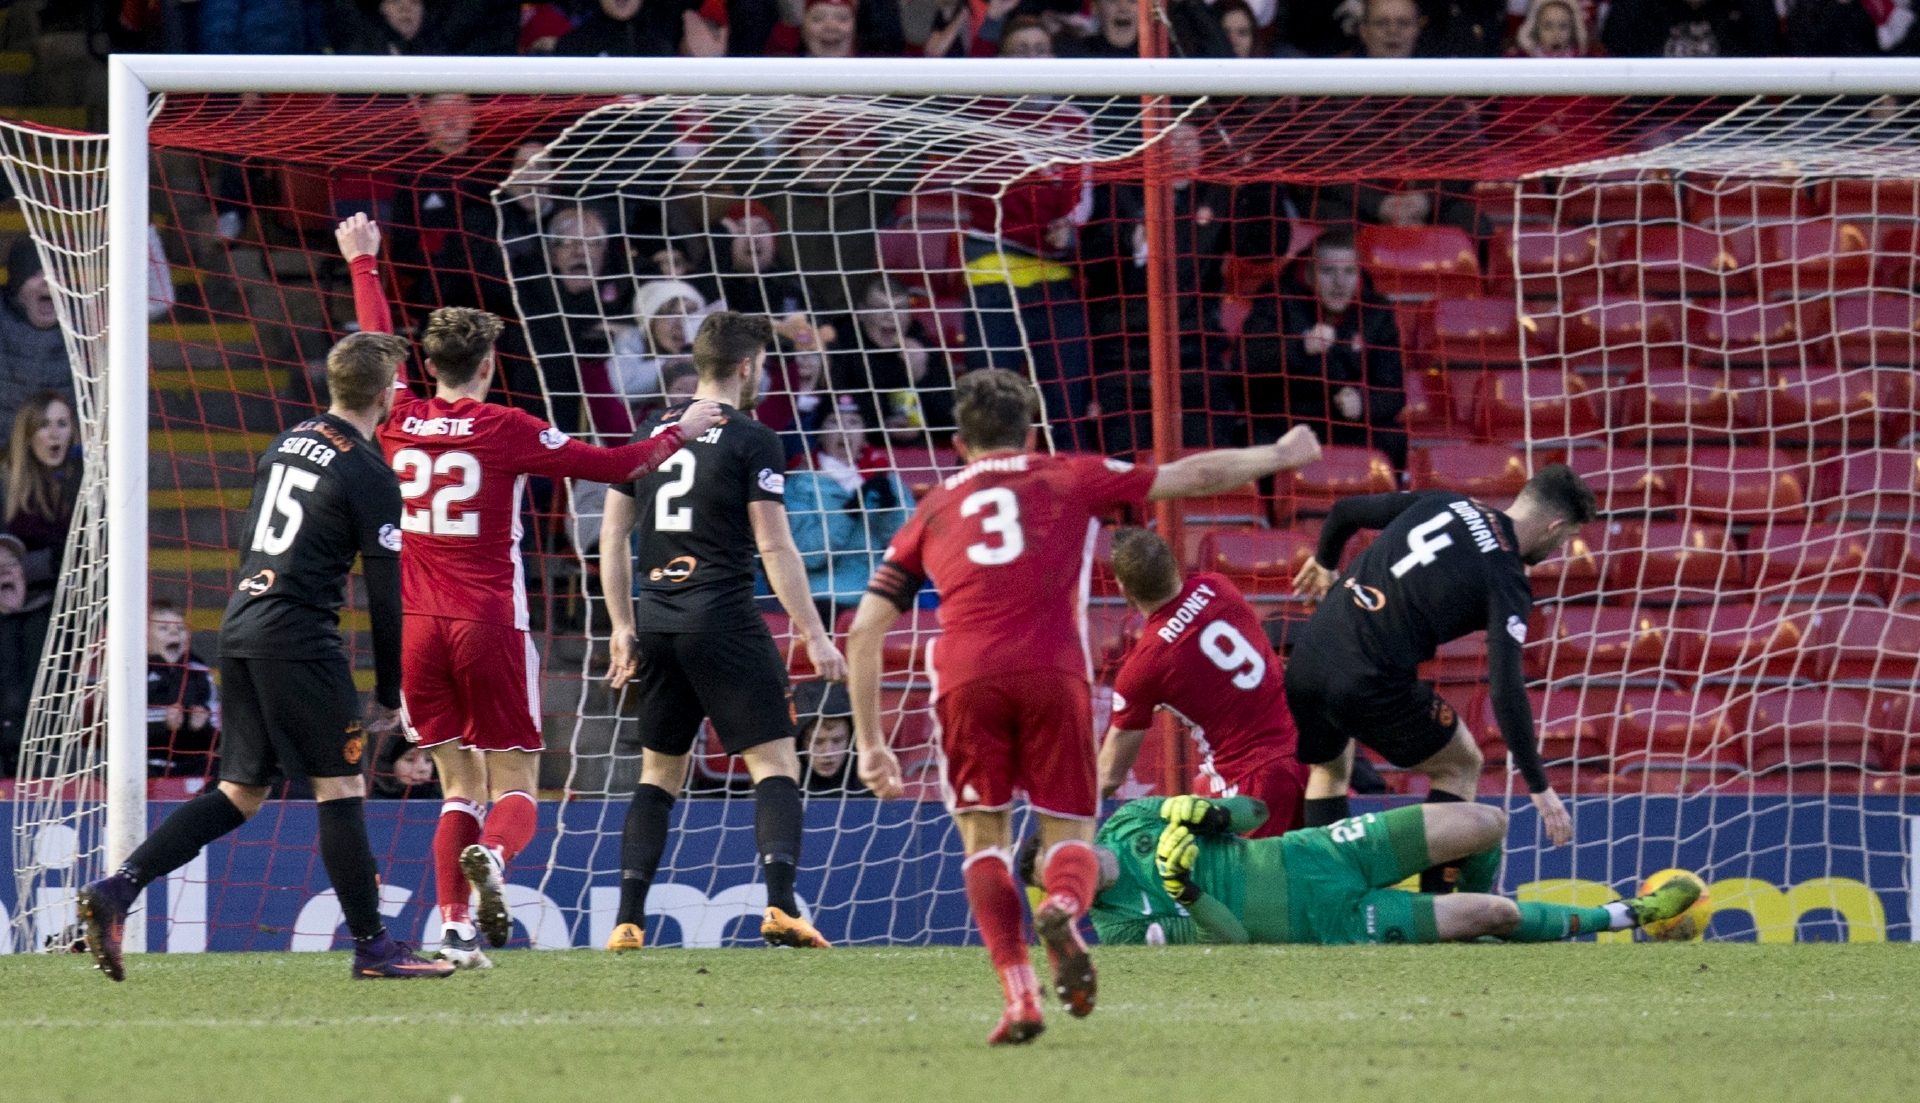 Aberdeen's Adam Rooney scores to make it 1-0